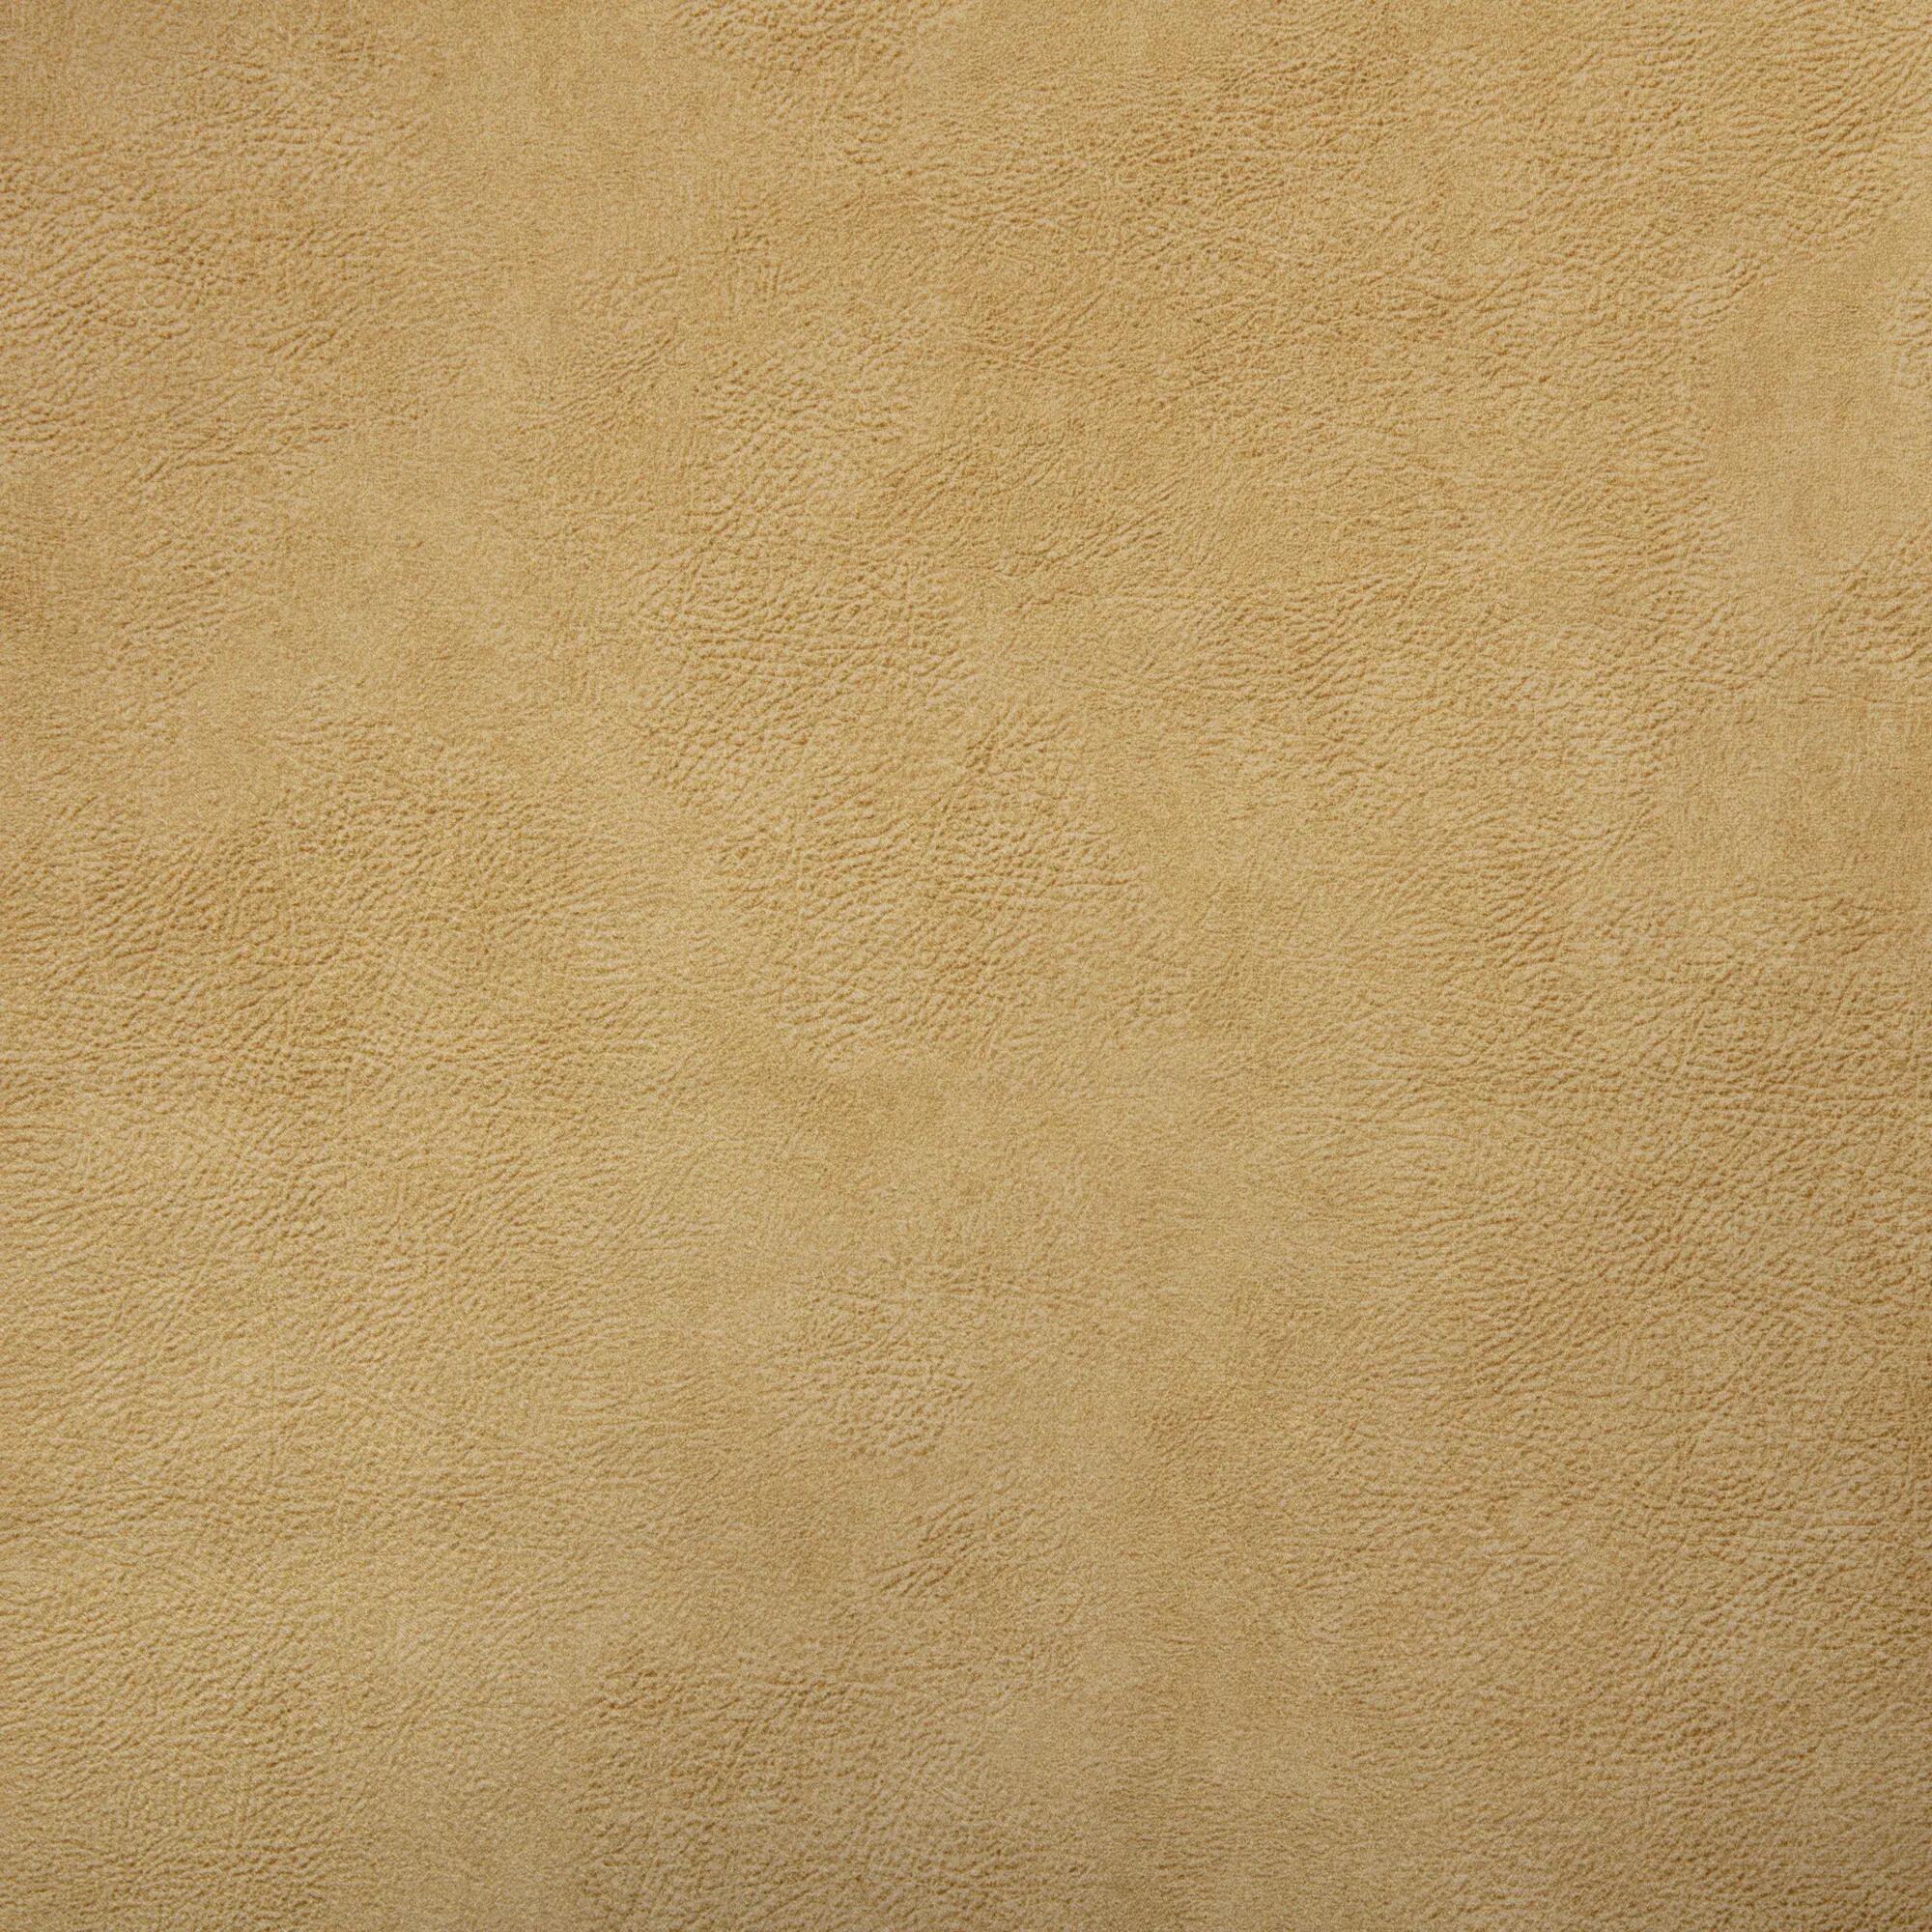 Tela al corte tapicería imitación piel vison mostaza ancho 140 cm